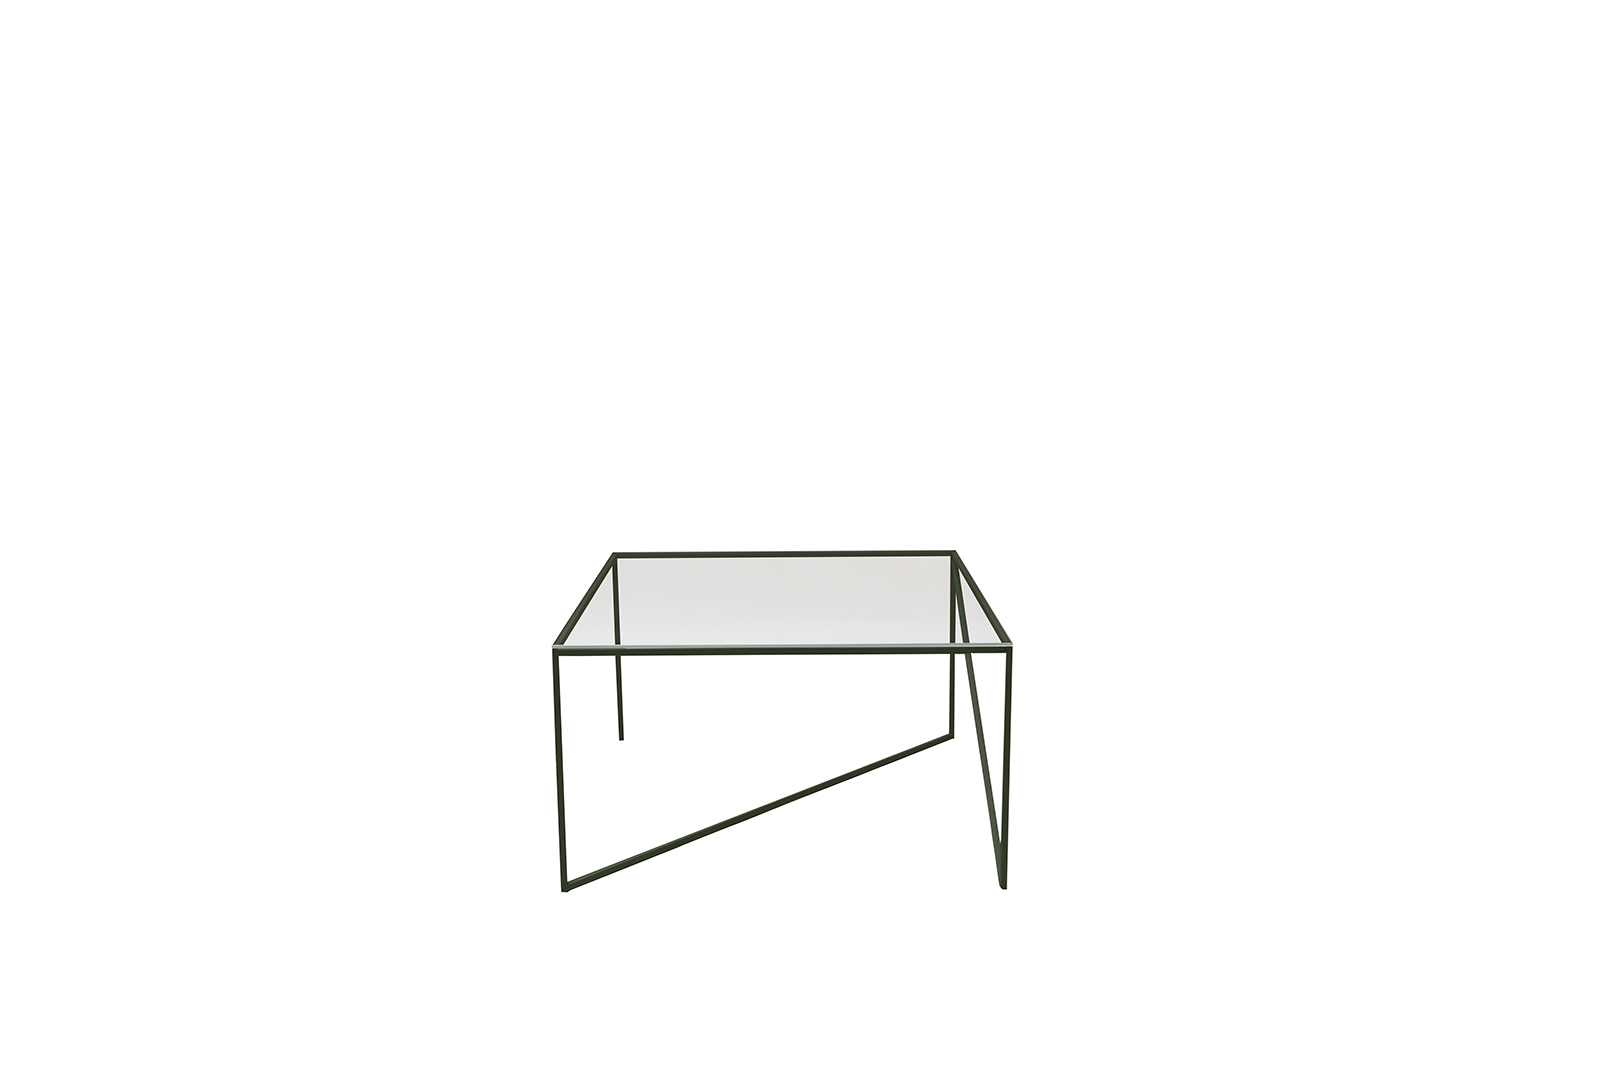 Szklany stolik kawowy object052